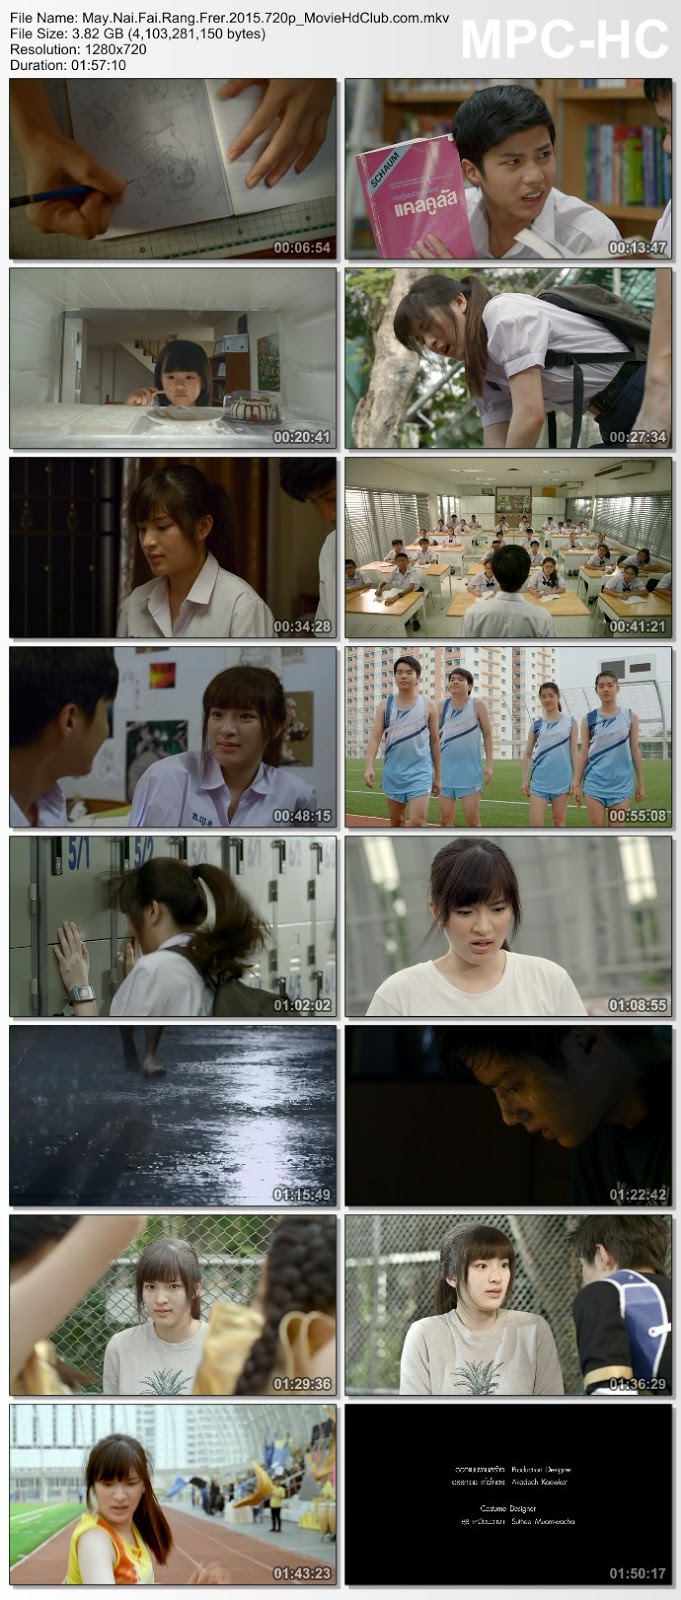 [Mini-HD] May Nai Fai Rang Frer (2015) - เมย์ไหน..ไฟแรงเฟร่อ [DVDRip 720p][เสียง:ไทย 5.1][ซับ:-][.MKV][3.82GB] NF_MovieHdClub_SS